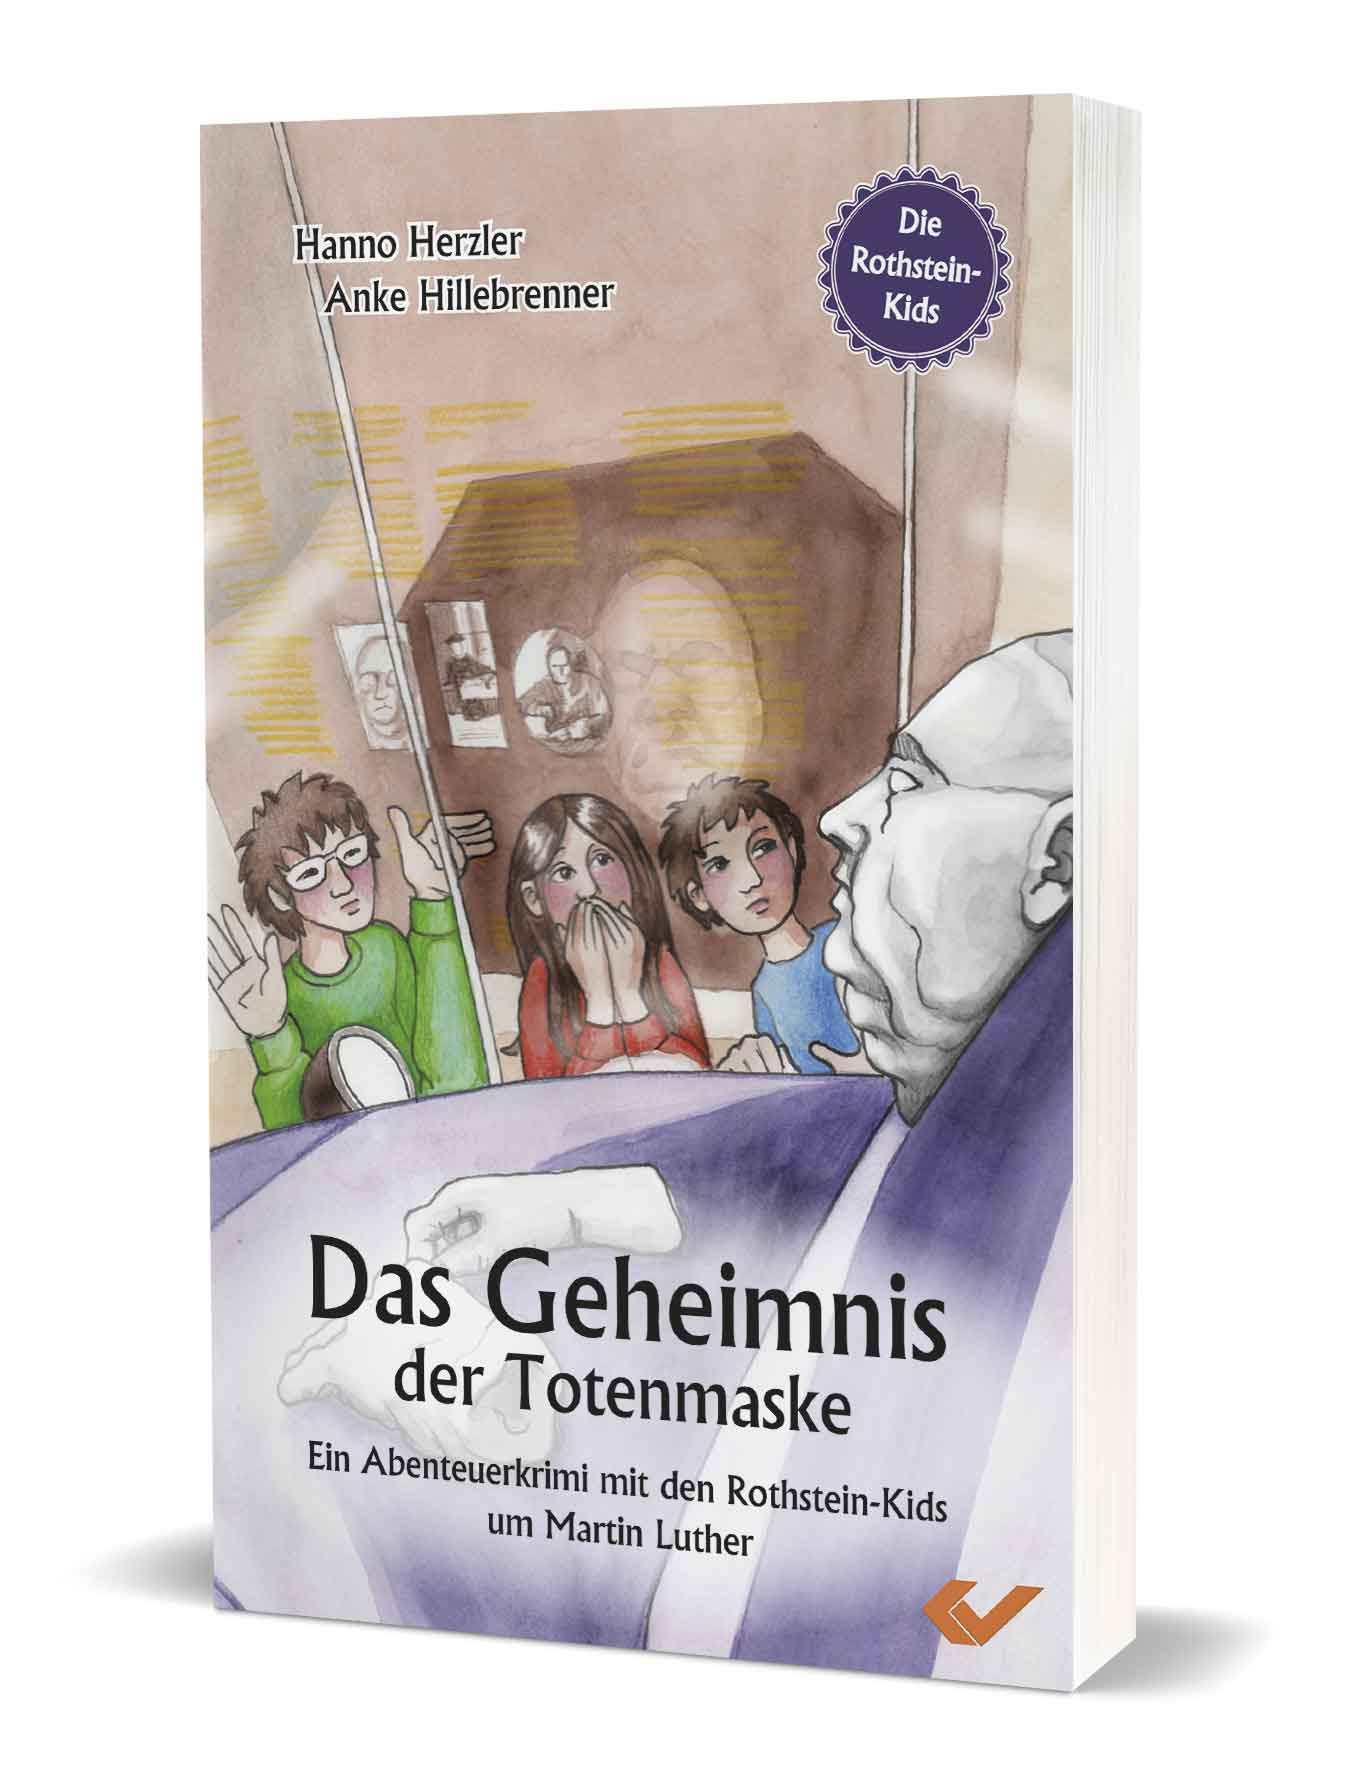 Hanno Herzler/Anke Hillebrenner: Das Geheimnis der Totenmaske - Ein Abenteuerkrimi mit den Rothstein-Kids um Martin Luther